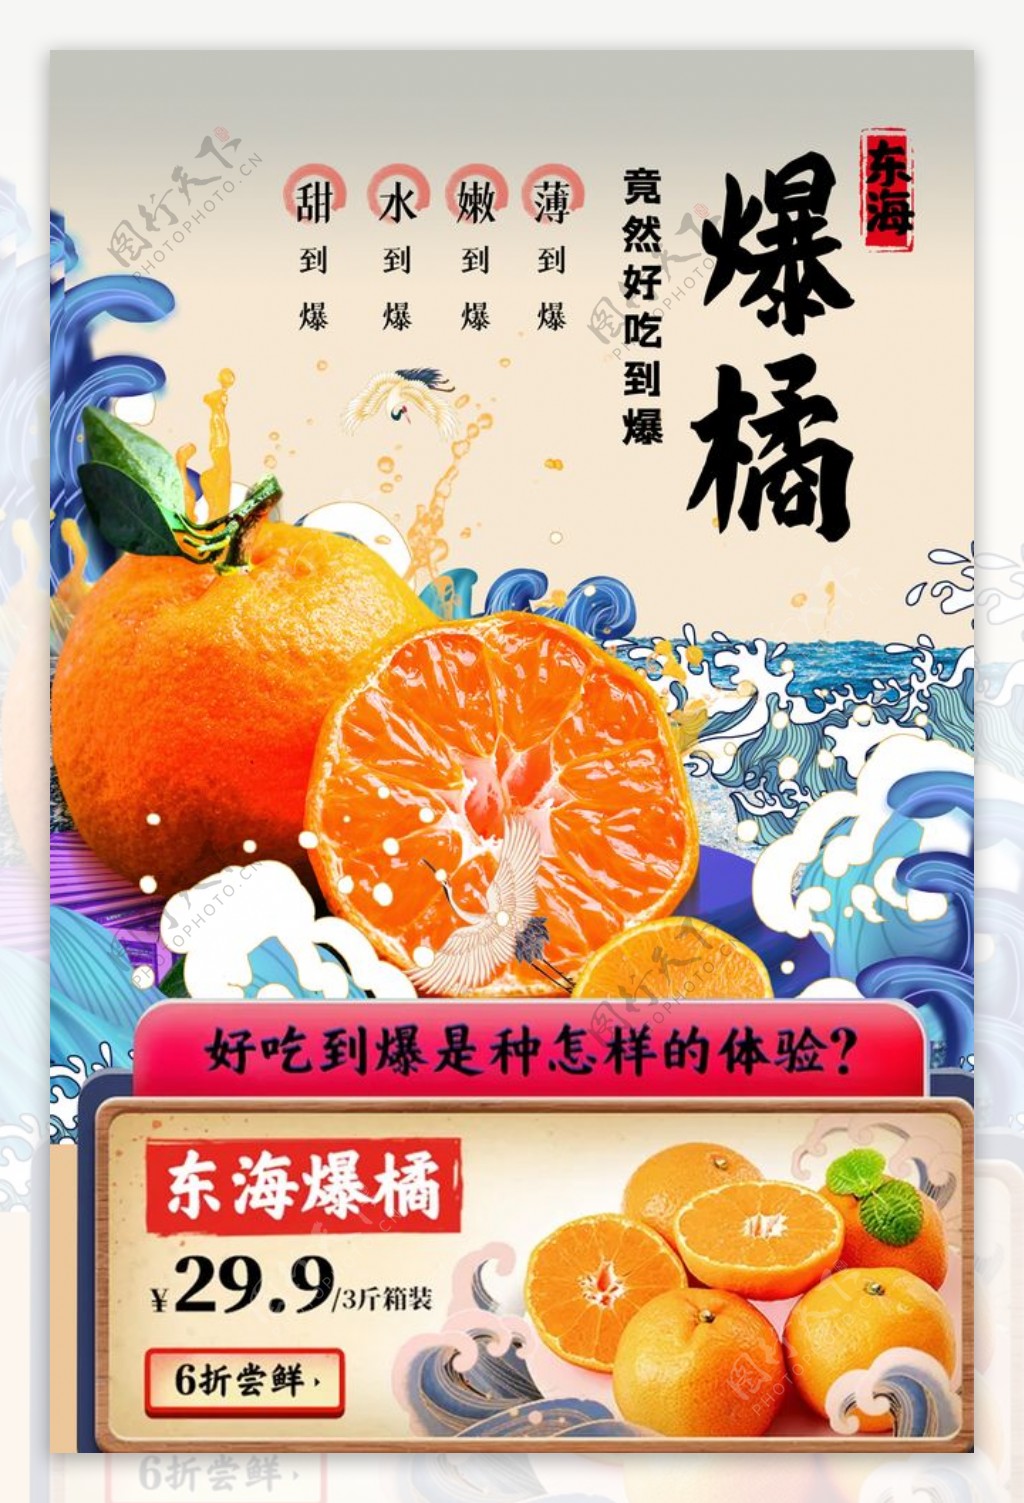 橘子水果活动促销宣传海报